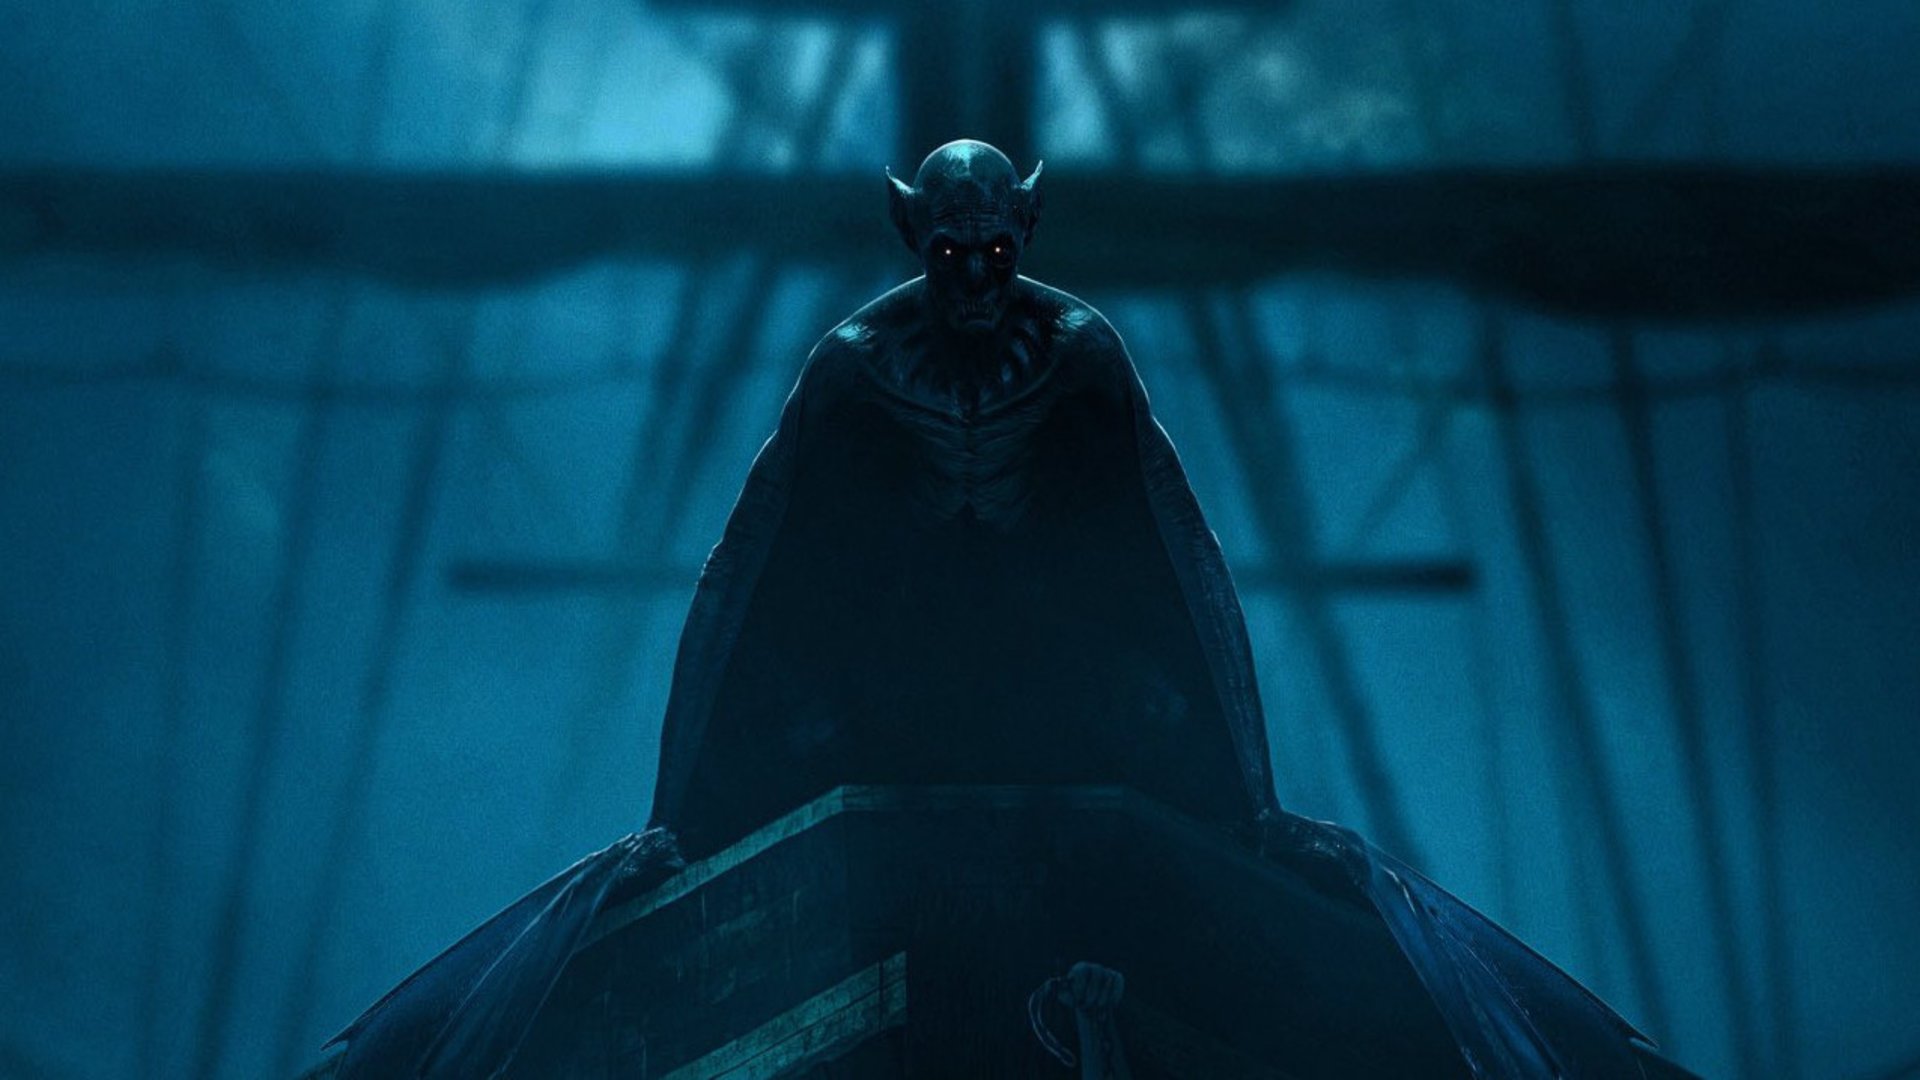 #Erster schauriger Trailer: Neuer Dracula-Horror zeigt maritimes Vampir-Grauen auf hoher See